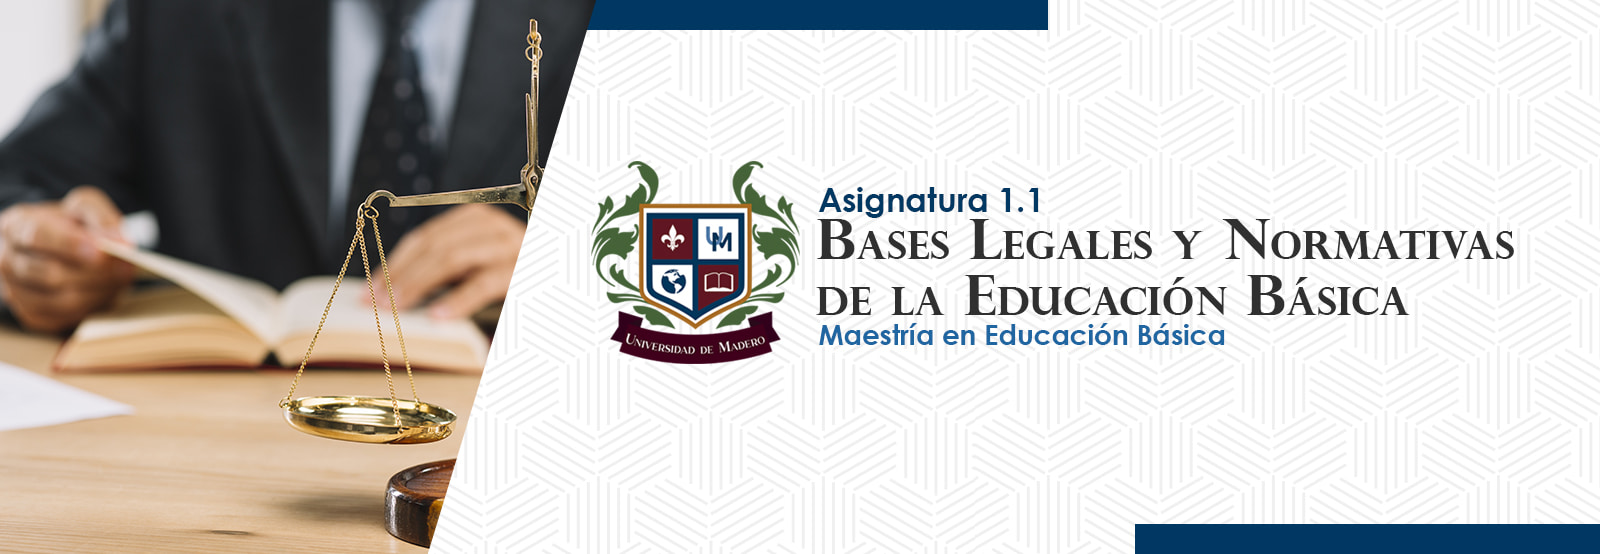 MEB0101 Bases Legales y Normativas de la Educación Básica